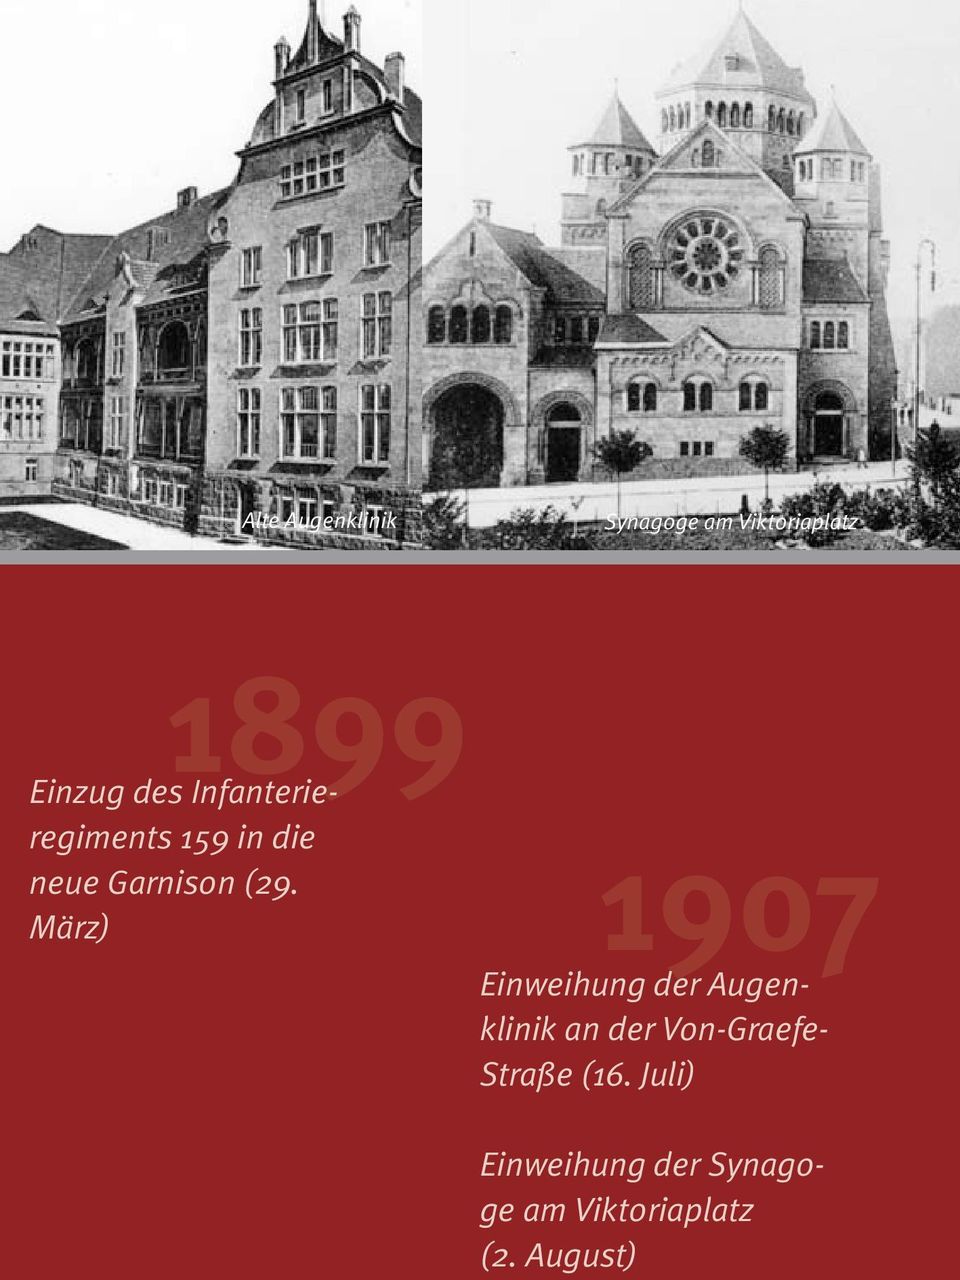 März) 1907 Einweihung der Augenklinik an der Von-Graefe-